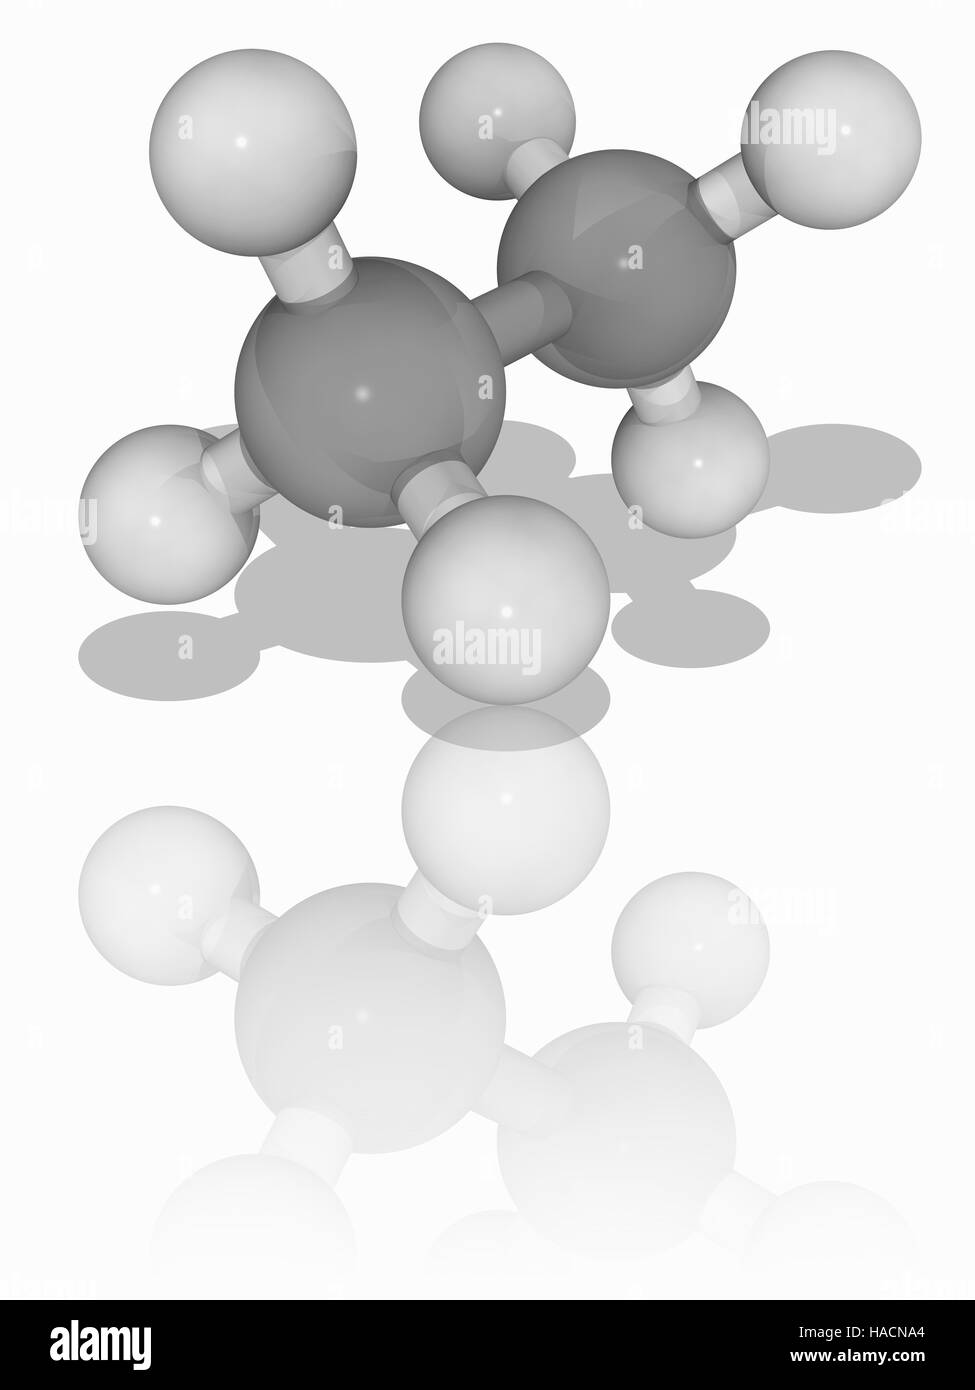 El etano. Modelo molecular de los alcanos hidrocarburos gas etano (C2.H6).  Este gas incoloro e inodoro está aislado en una escala industrial a partir  de gas natural. También es formado como un